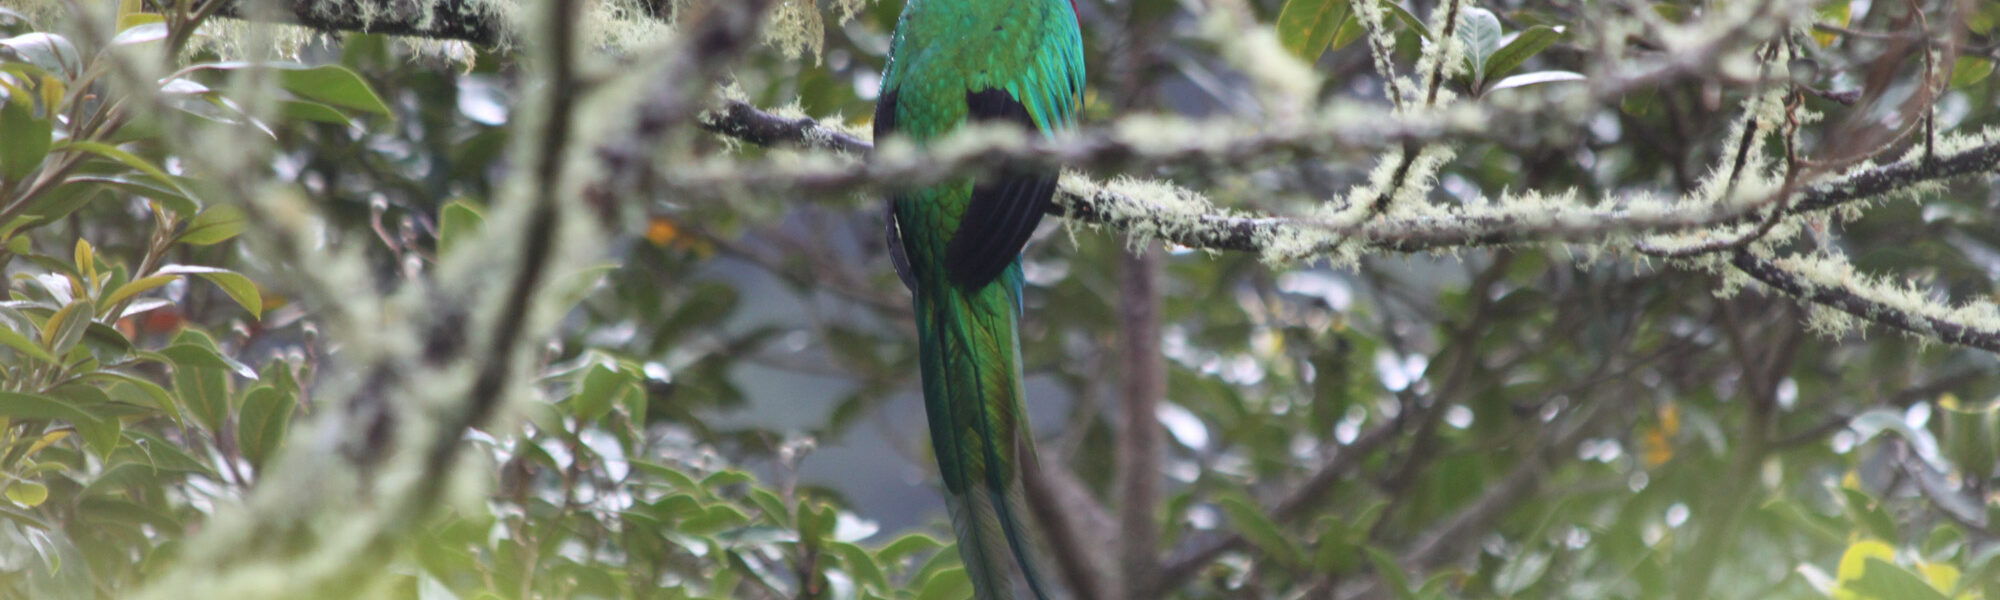 Parque Nacional Los Quetzales - Costa Rica